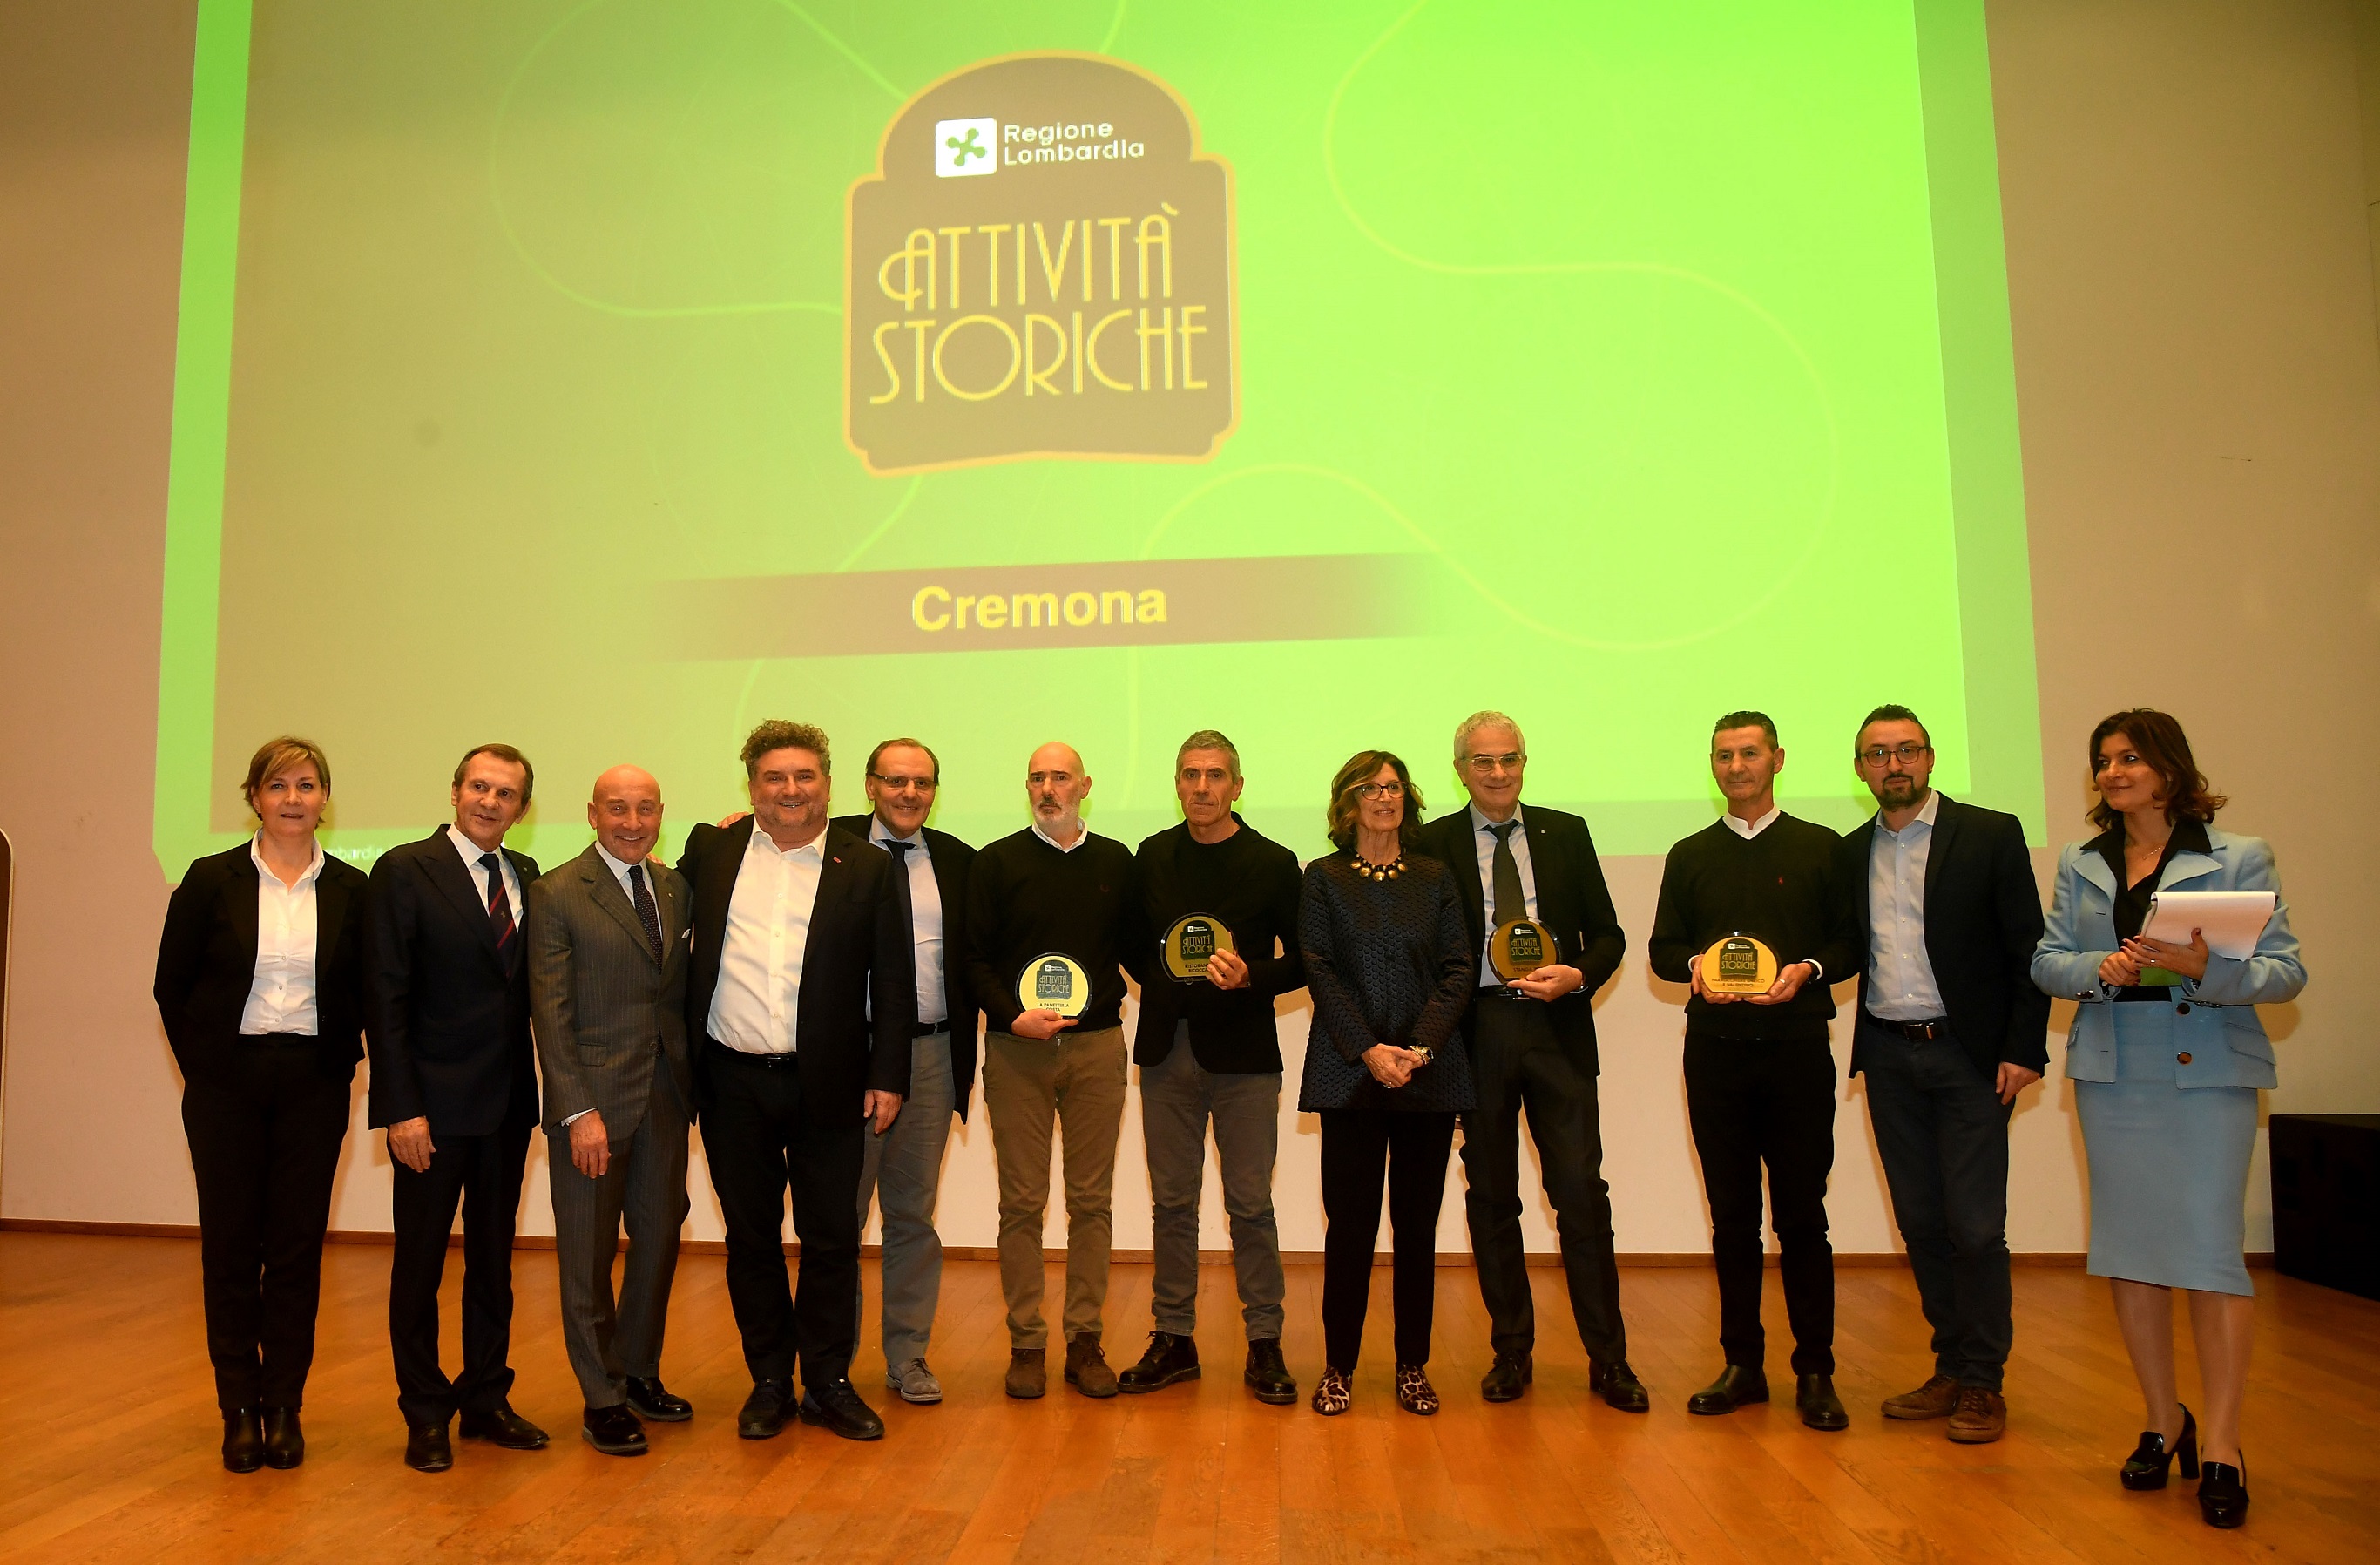 Cremona premiazione attività storiche 2019